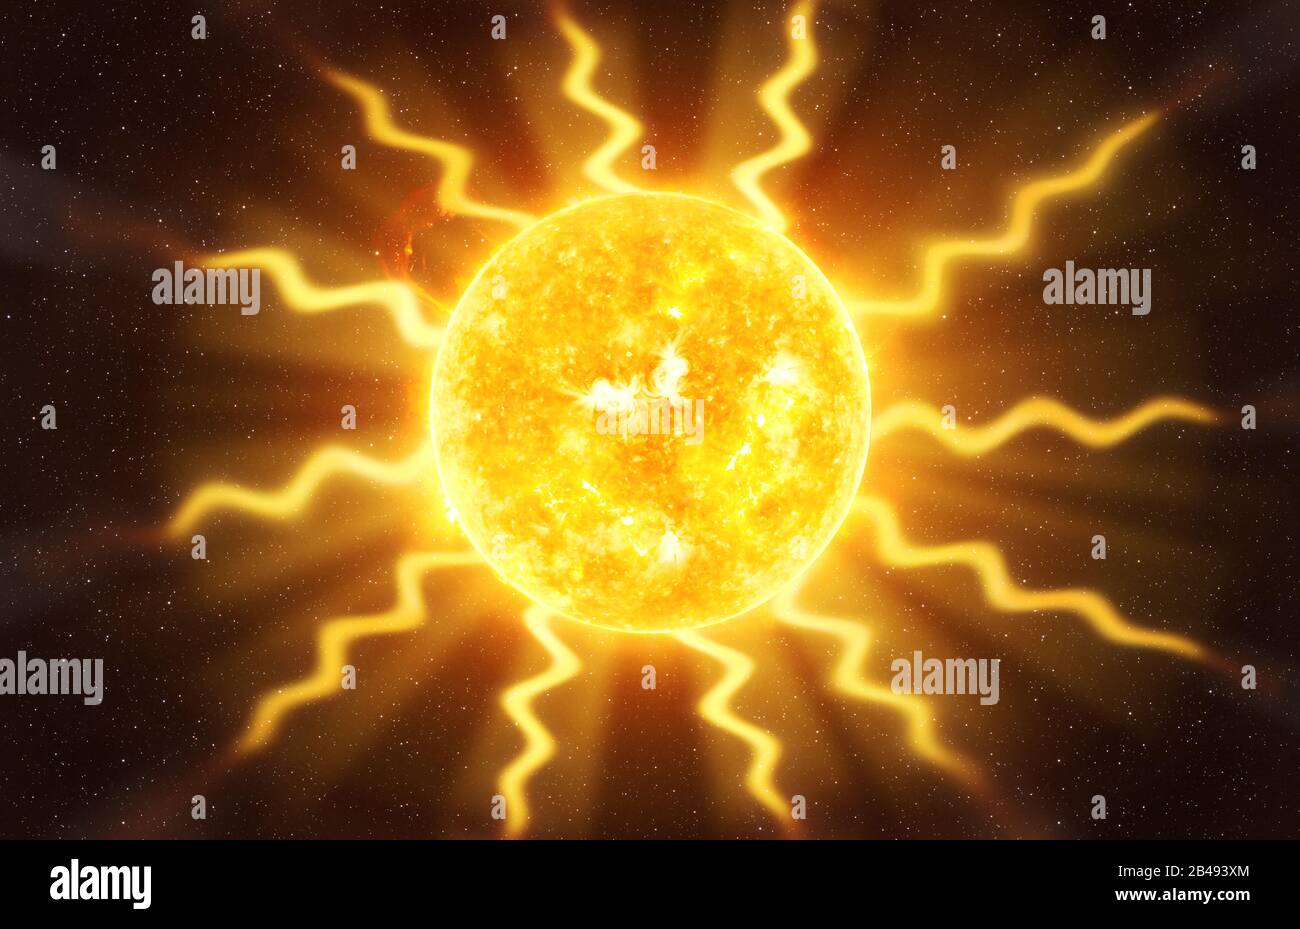 Pulsar Star contre la vision artistique sombre du ciel étoilé, éléments de cette image meublée par la NASA Banque D'Images